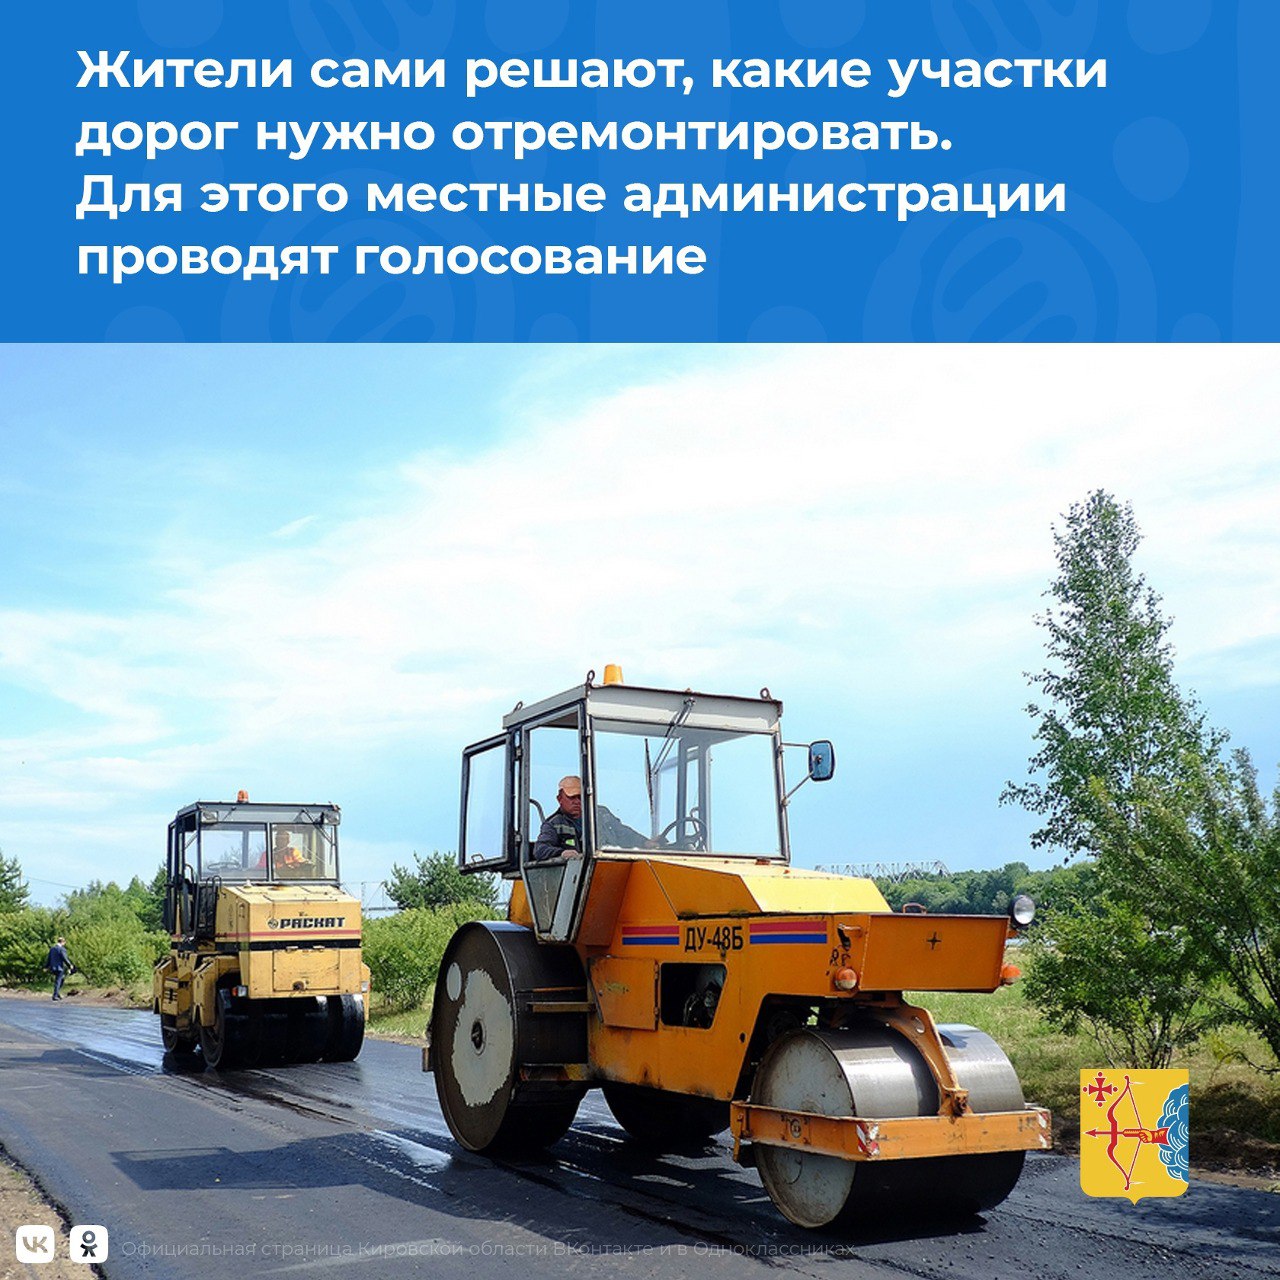 За объекты «дорожного миллиарда» проголосовало уже 25 тысяч кировчан.